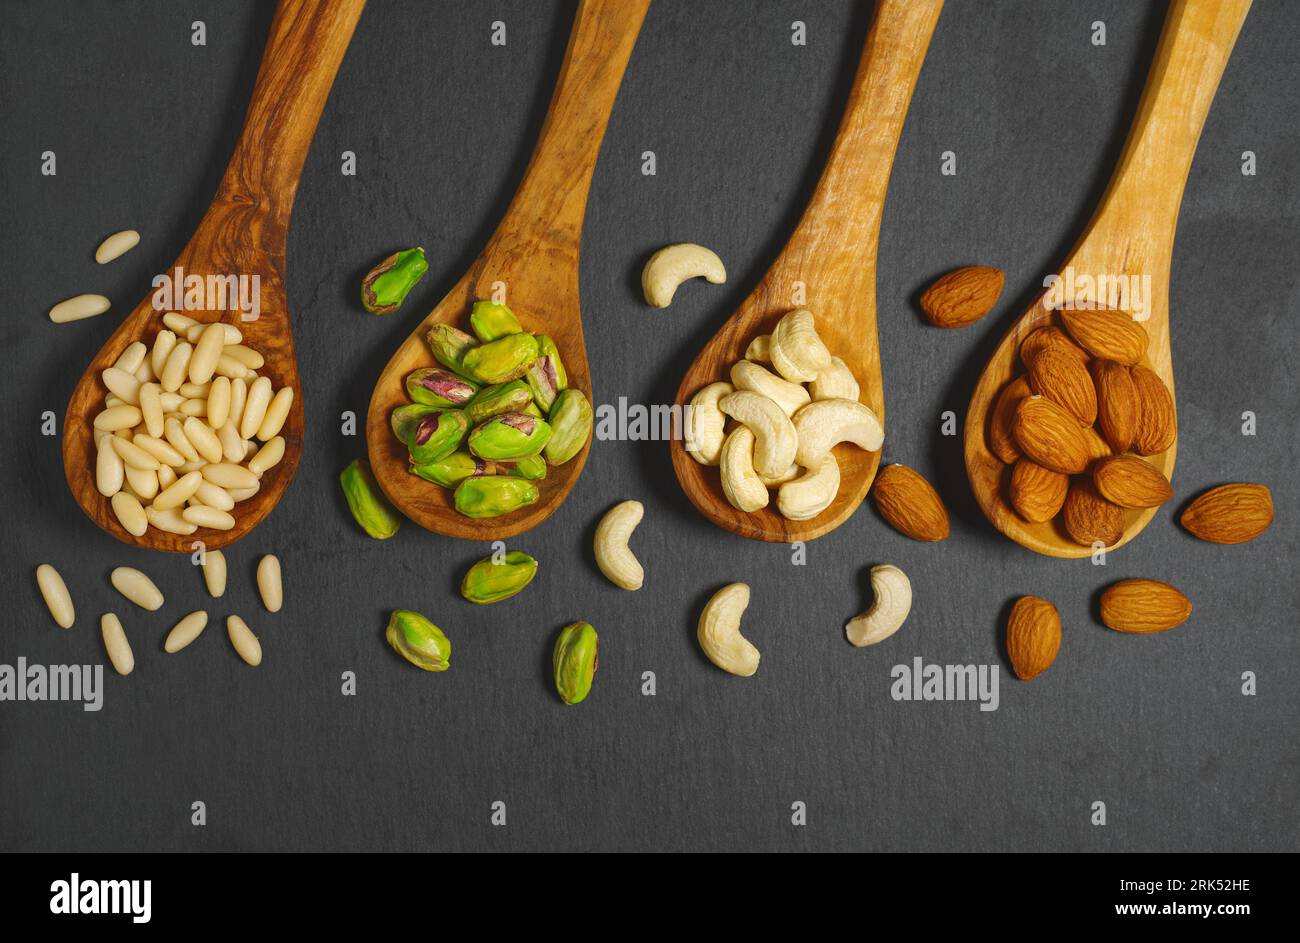 Les noix se mélangent avec des pignons de pin, des pistaches, des noix de cajou et des amandes dans des cuillères en bois vue de dessus gros plan sur fond gris foncé. Banque D'Images